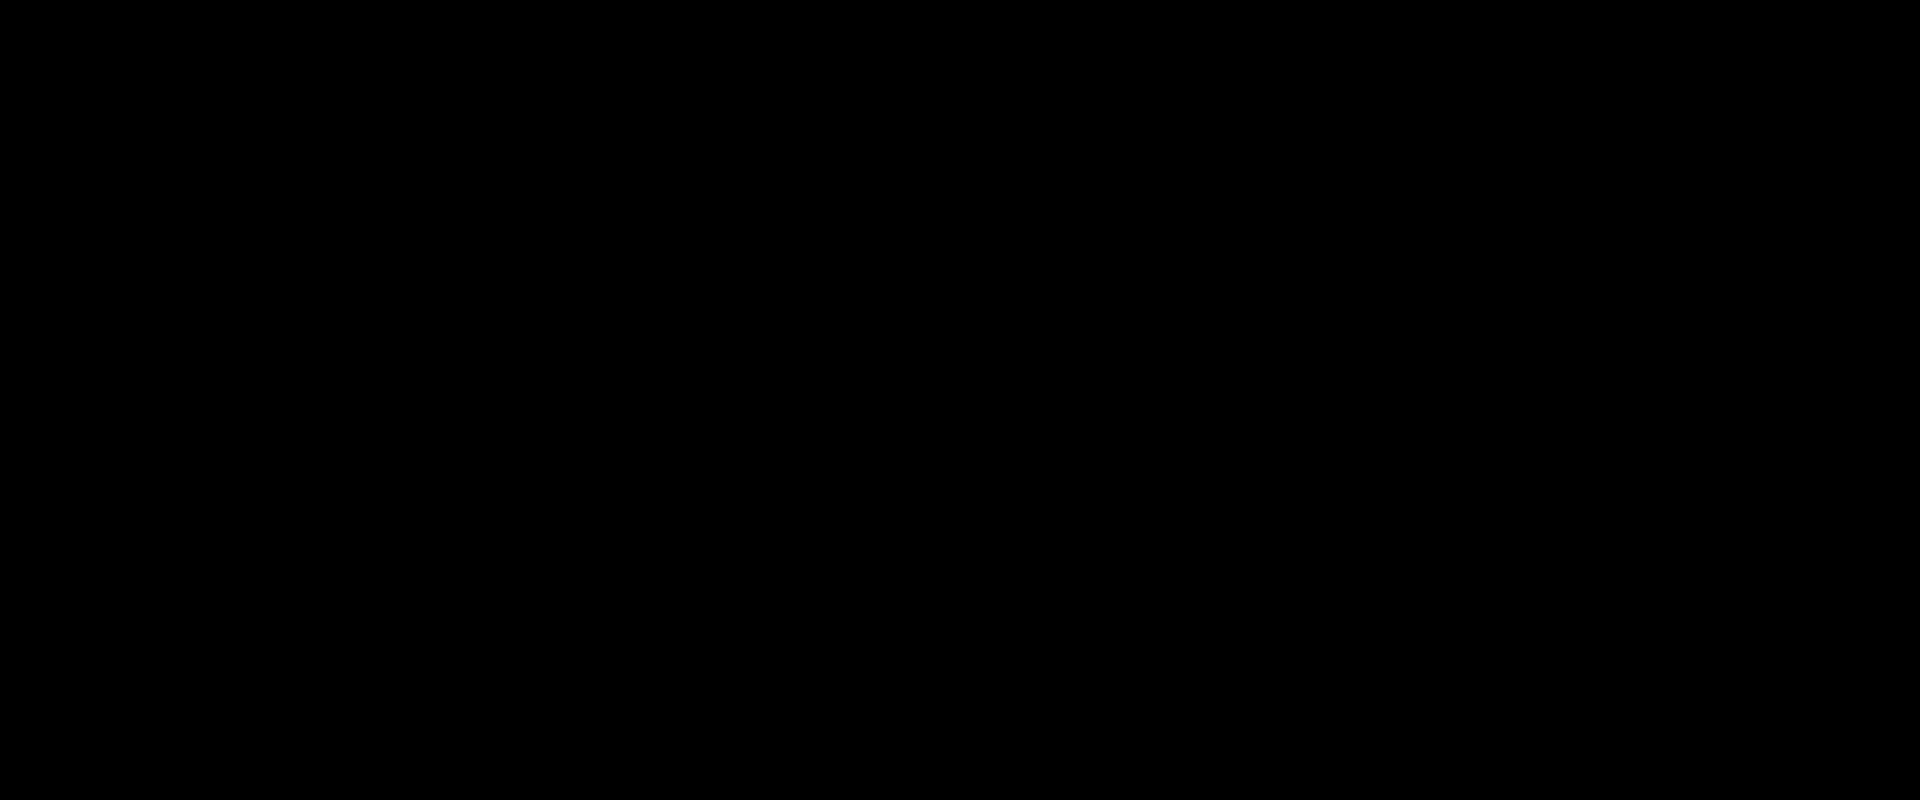 Dasfarbenfrohe Und Ikonische Lil Peep Logo Wallpaper